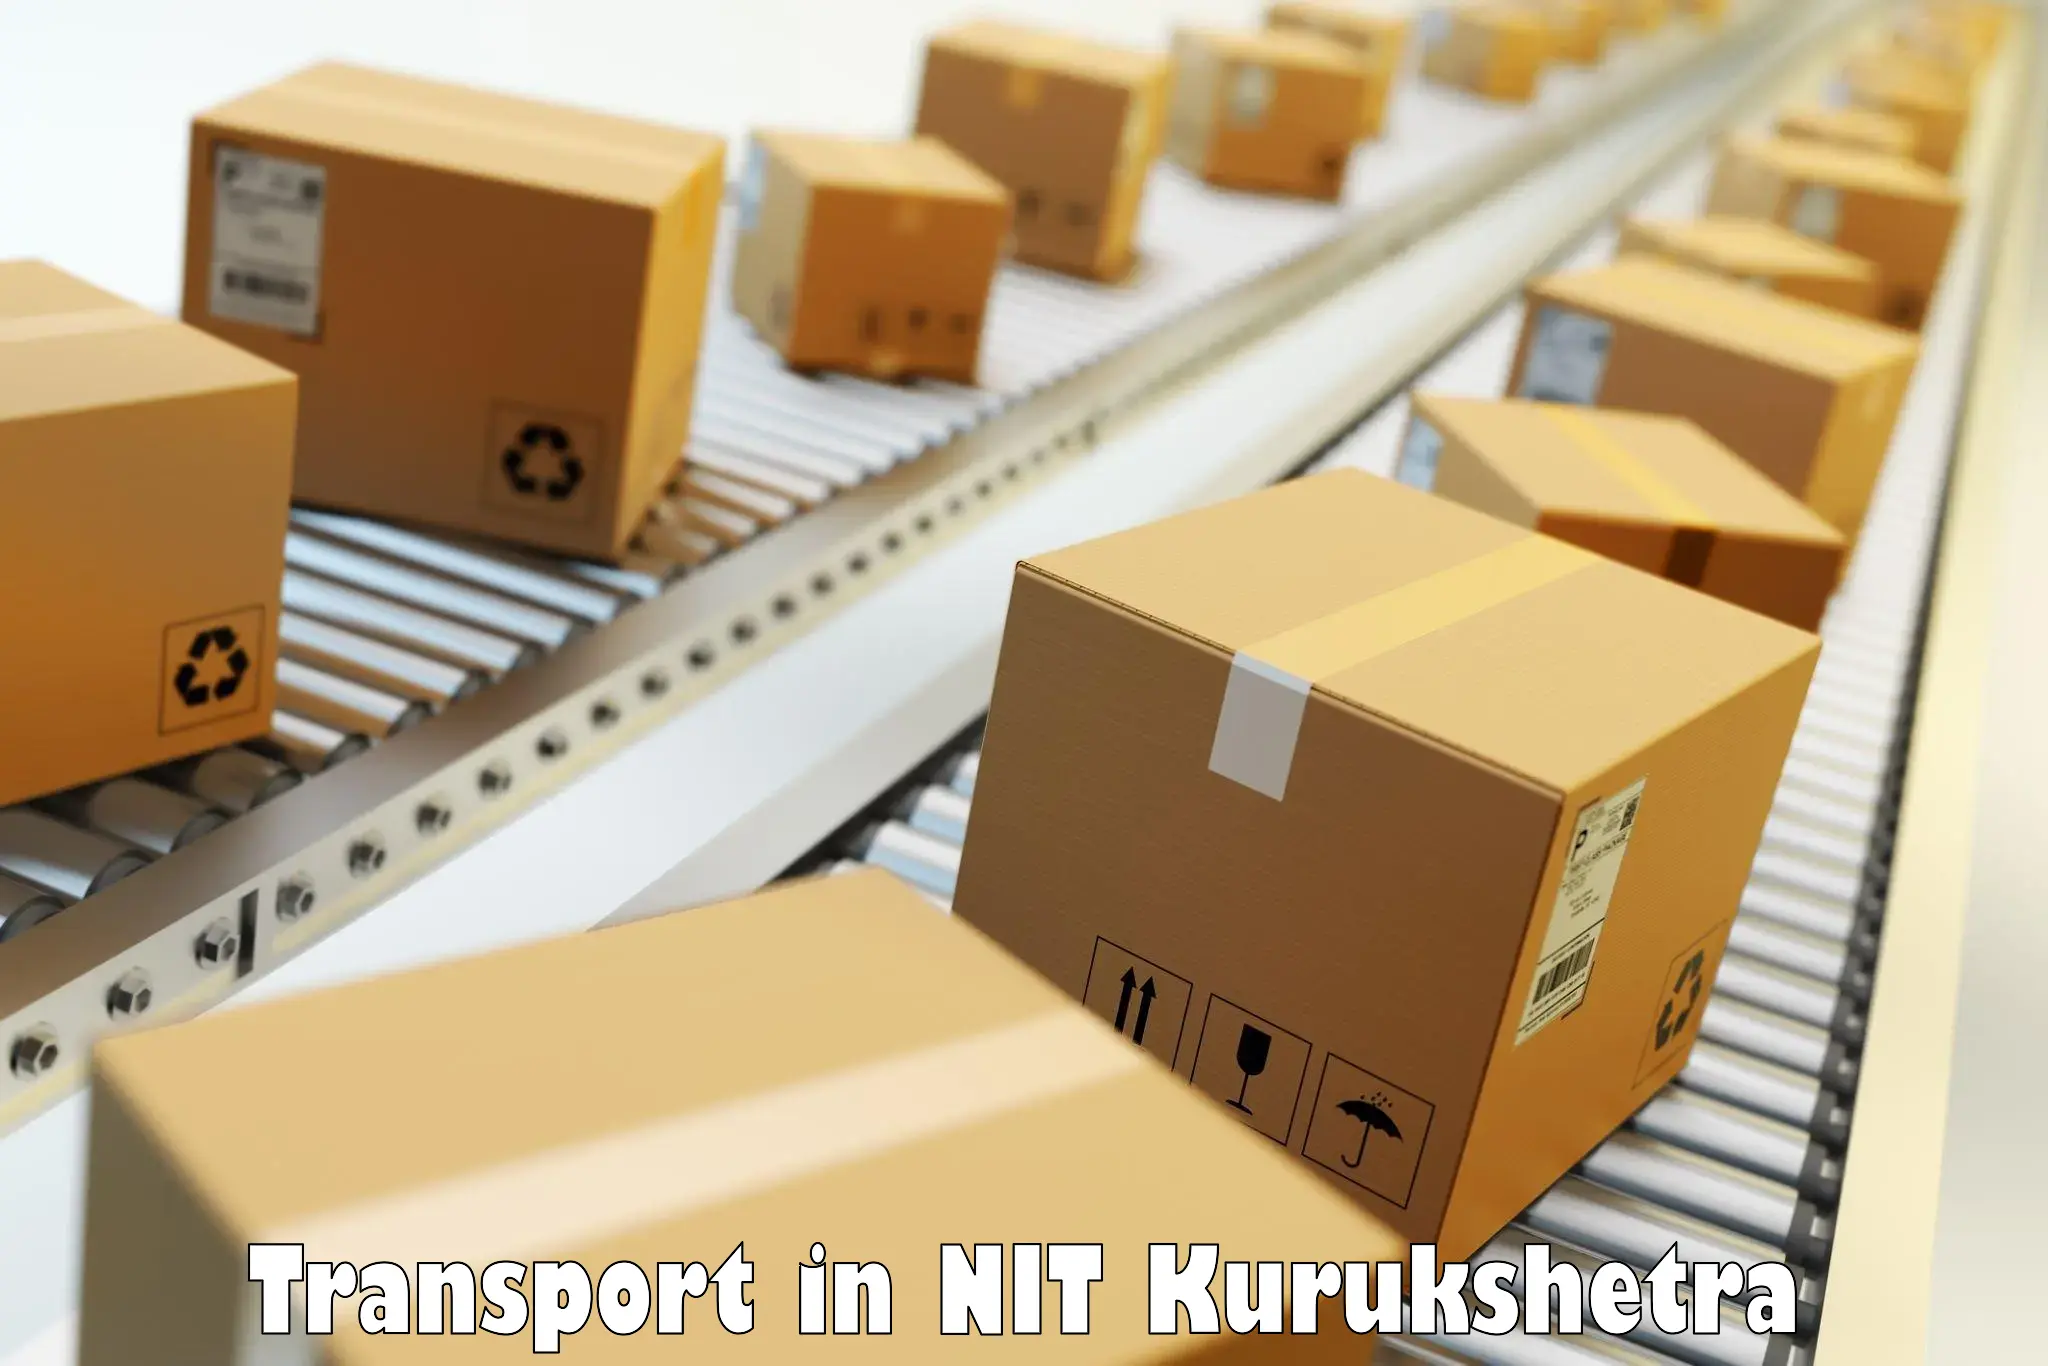 Logistics transportation services in NIT Kurukshetra